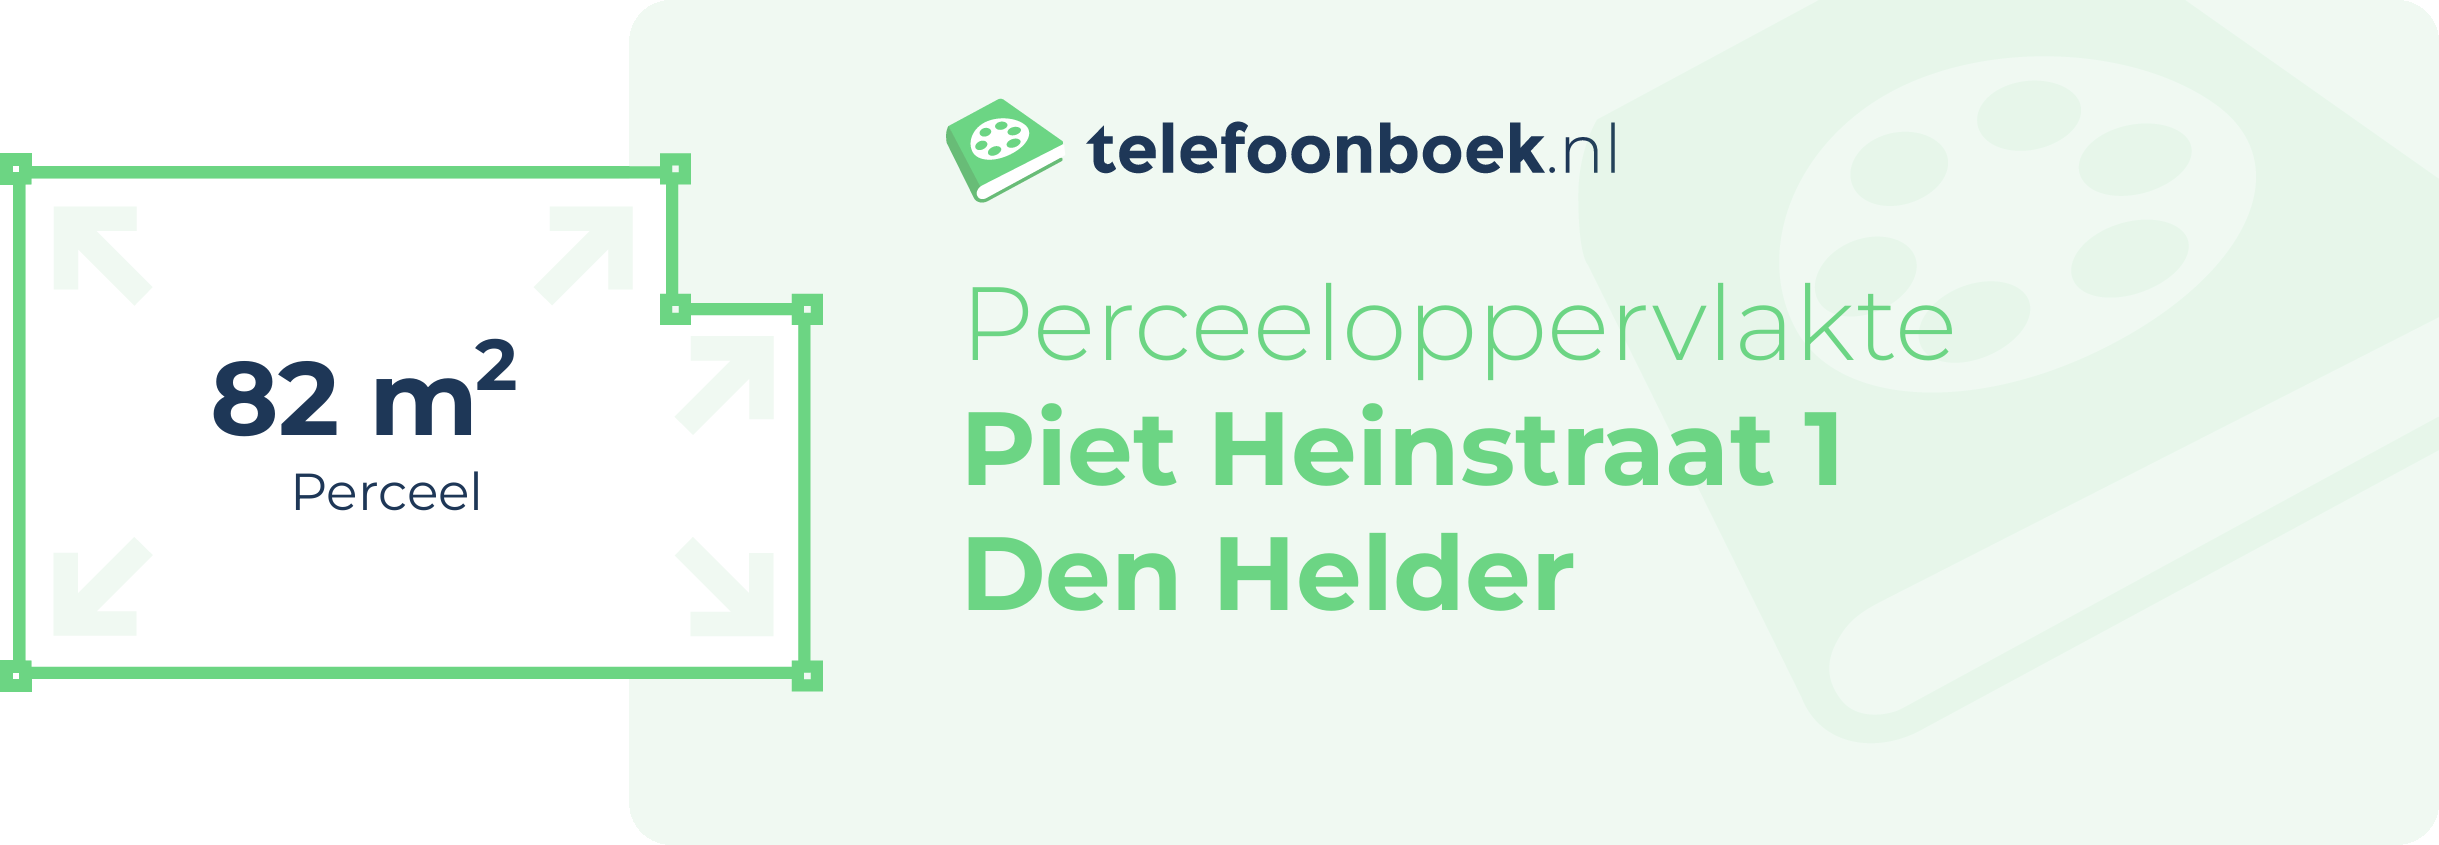 Perceeloppervlakte Piet Heinstraat 1 Den Helder